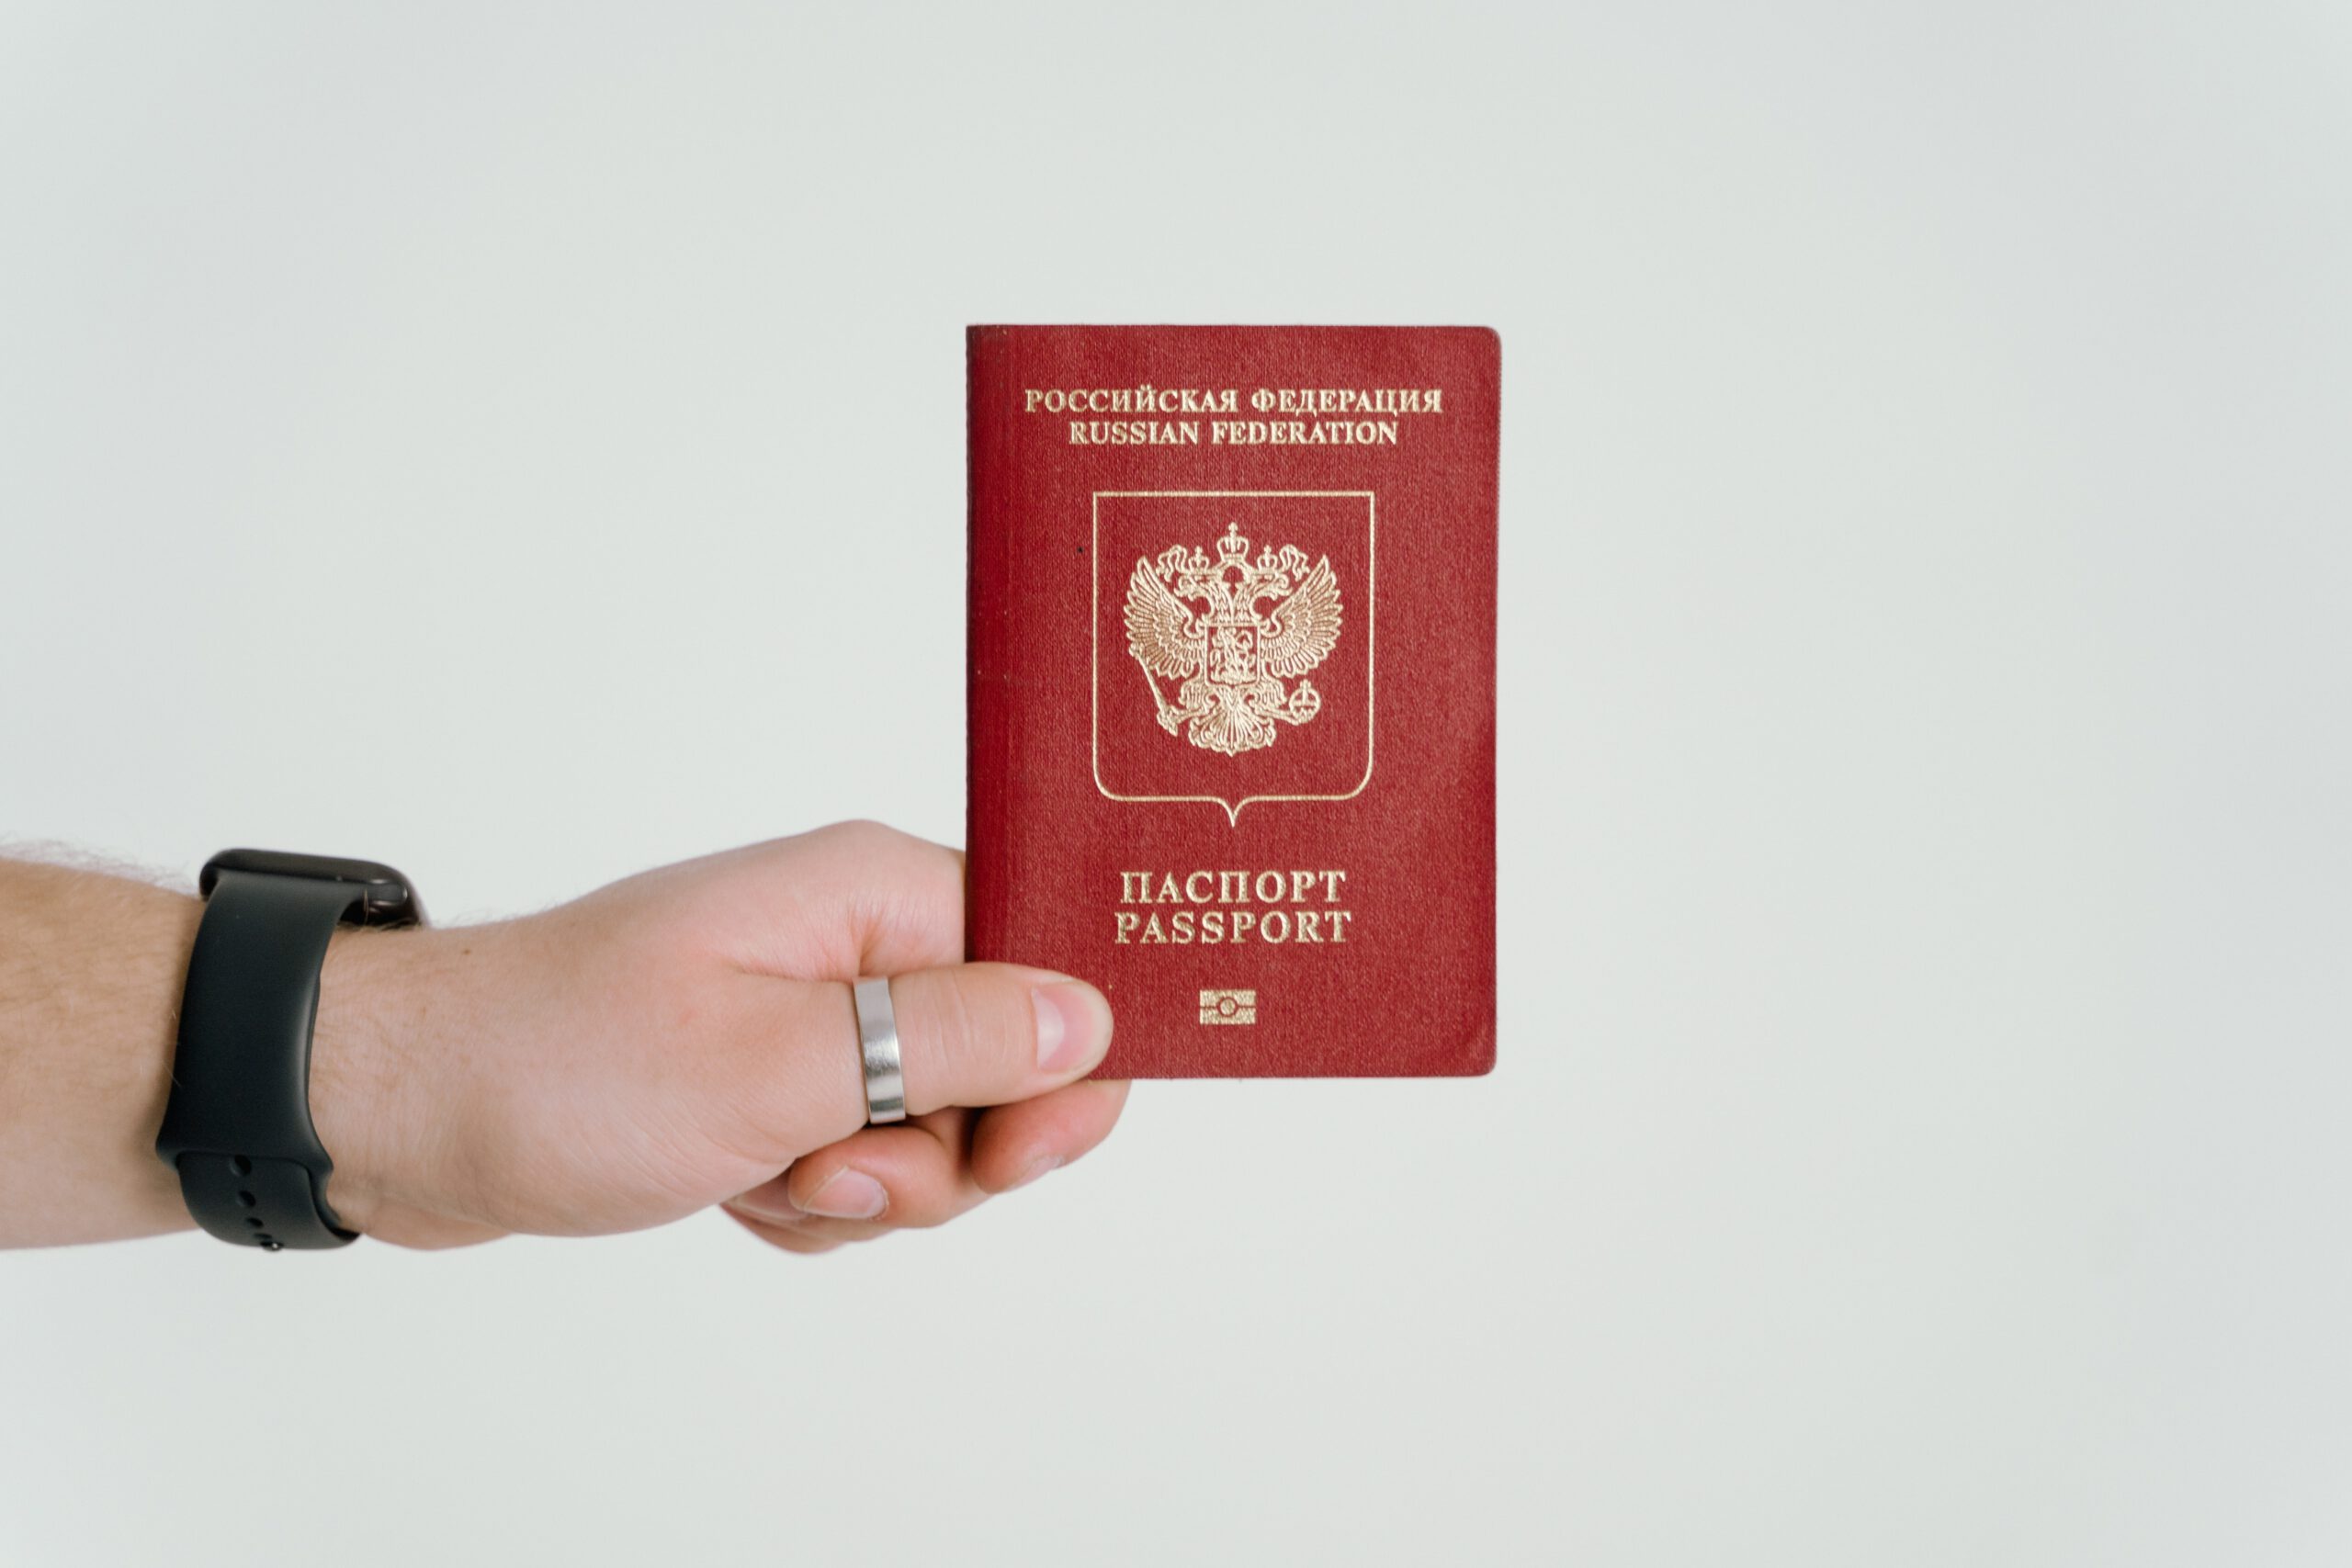 Dłoń z czarną opaską na ręce, trzymająca czerwony paszport na tle białej ściany